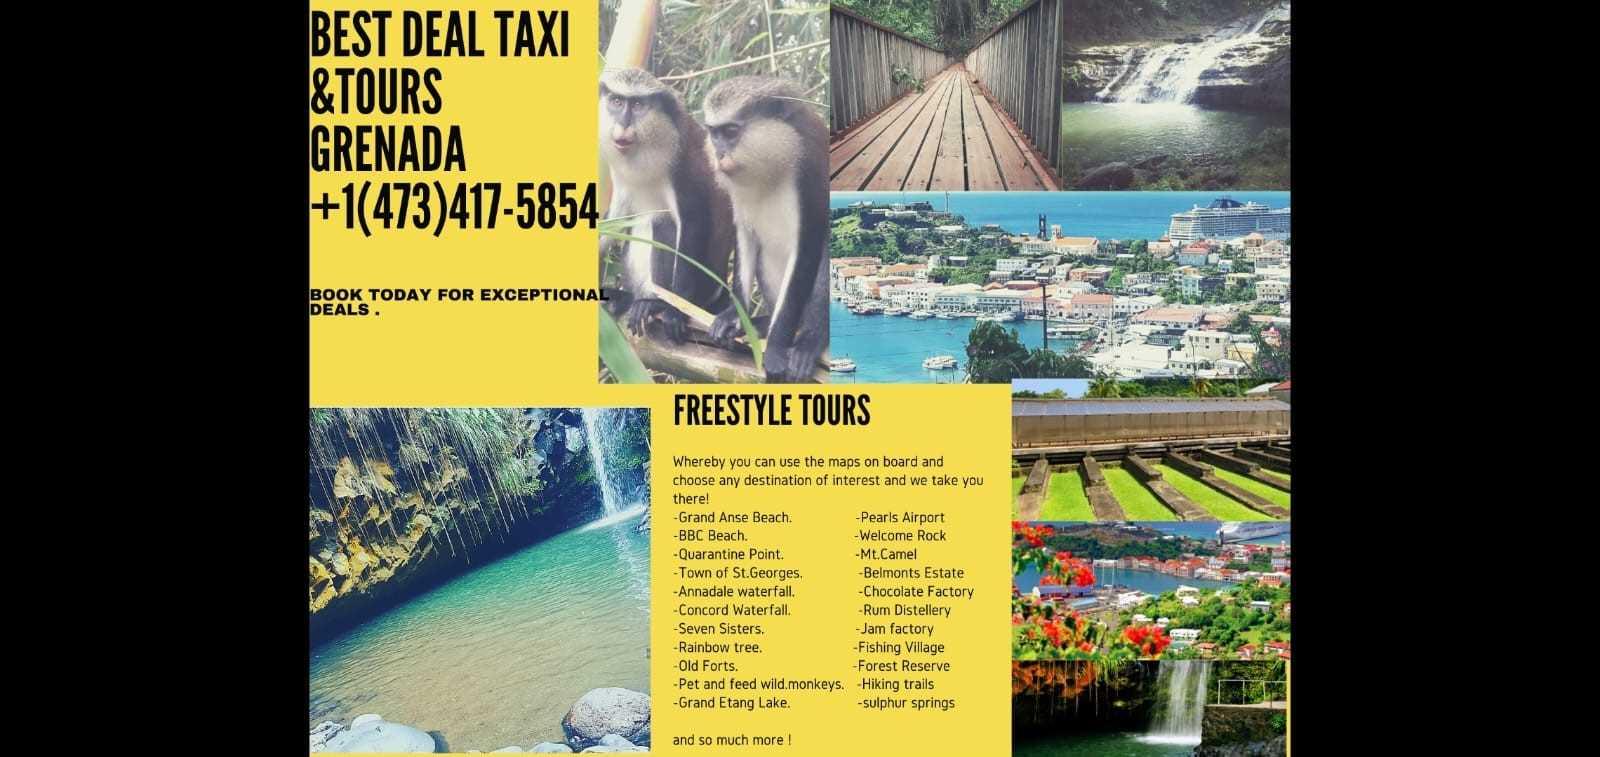 Best Deal Taxi Grenada